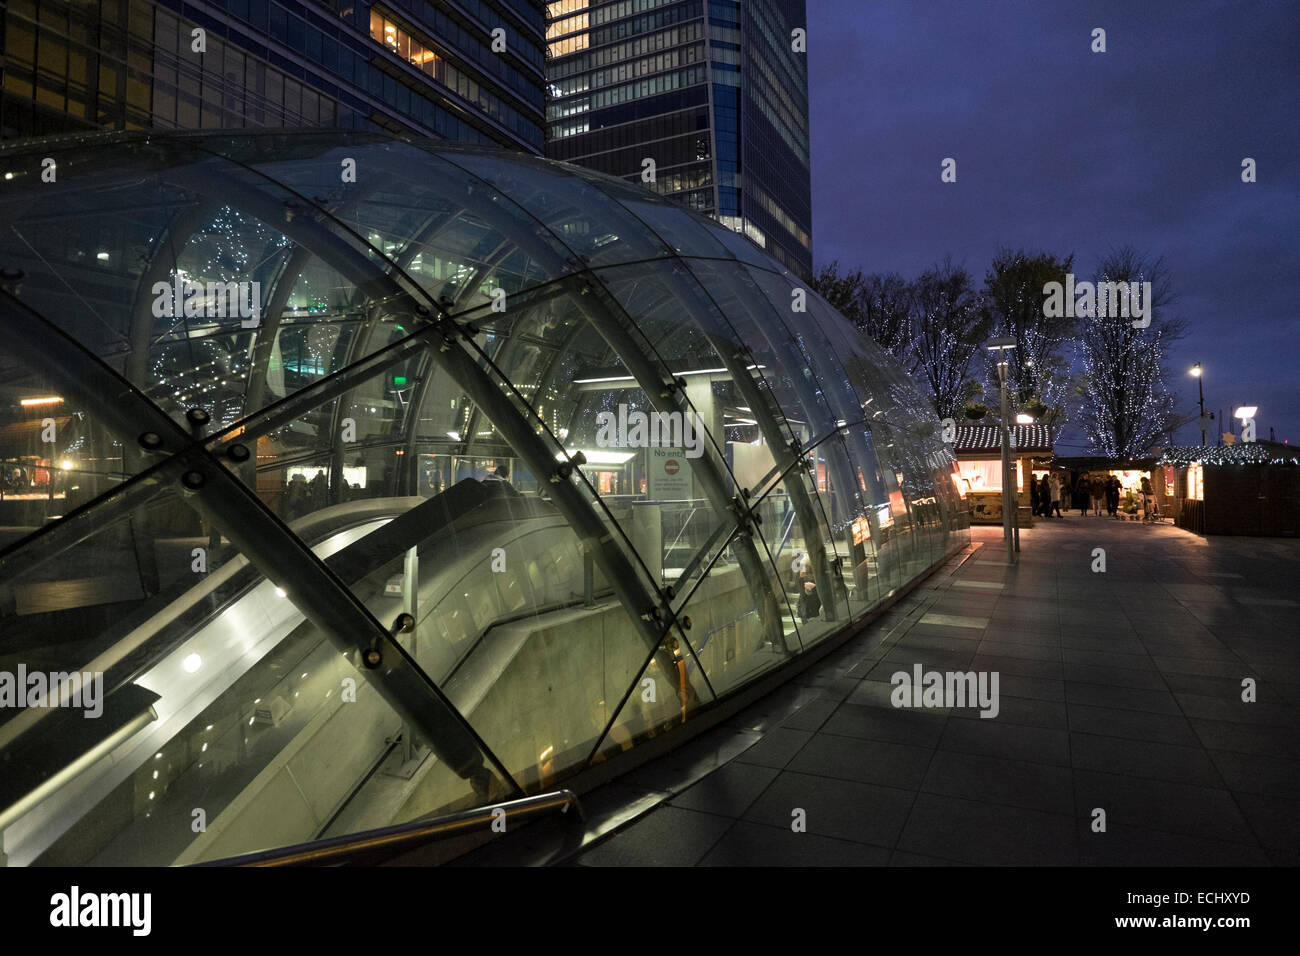 La station de métro Canary Wharf de nuit Banque D'Images